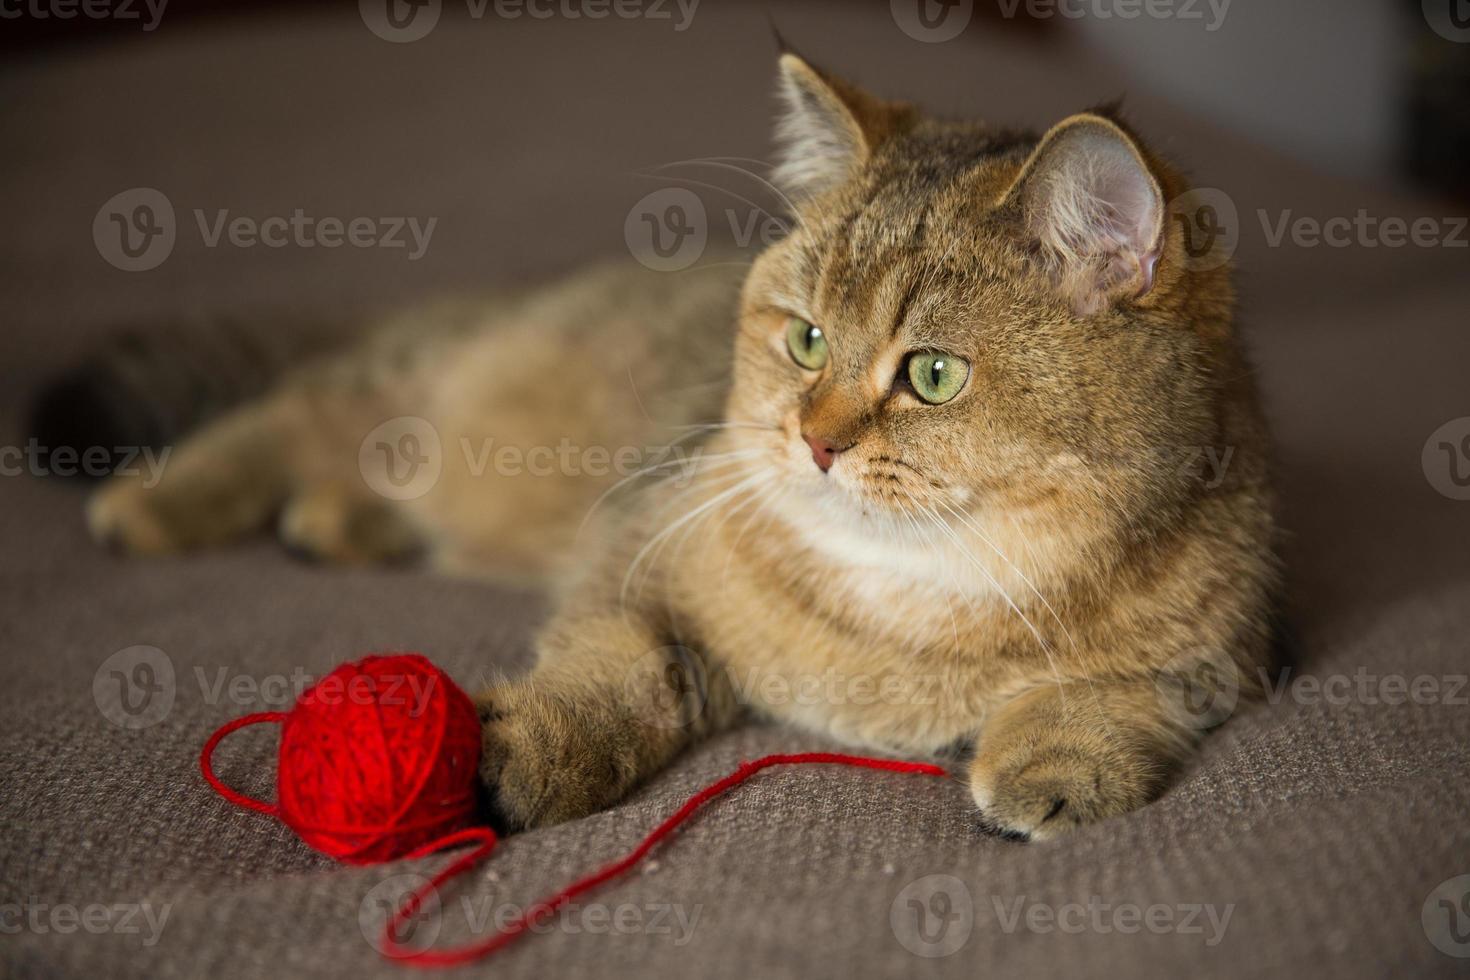 rasechte kat ligt met een rode bol draad foto